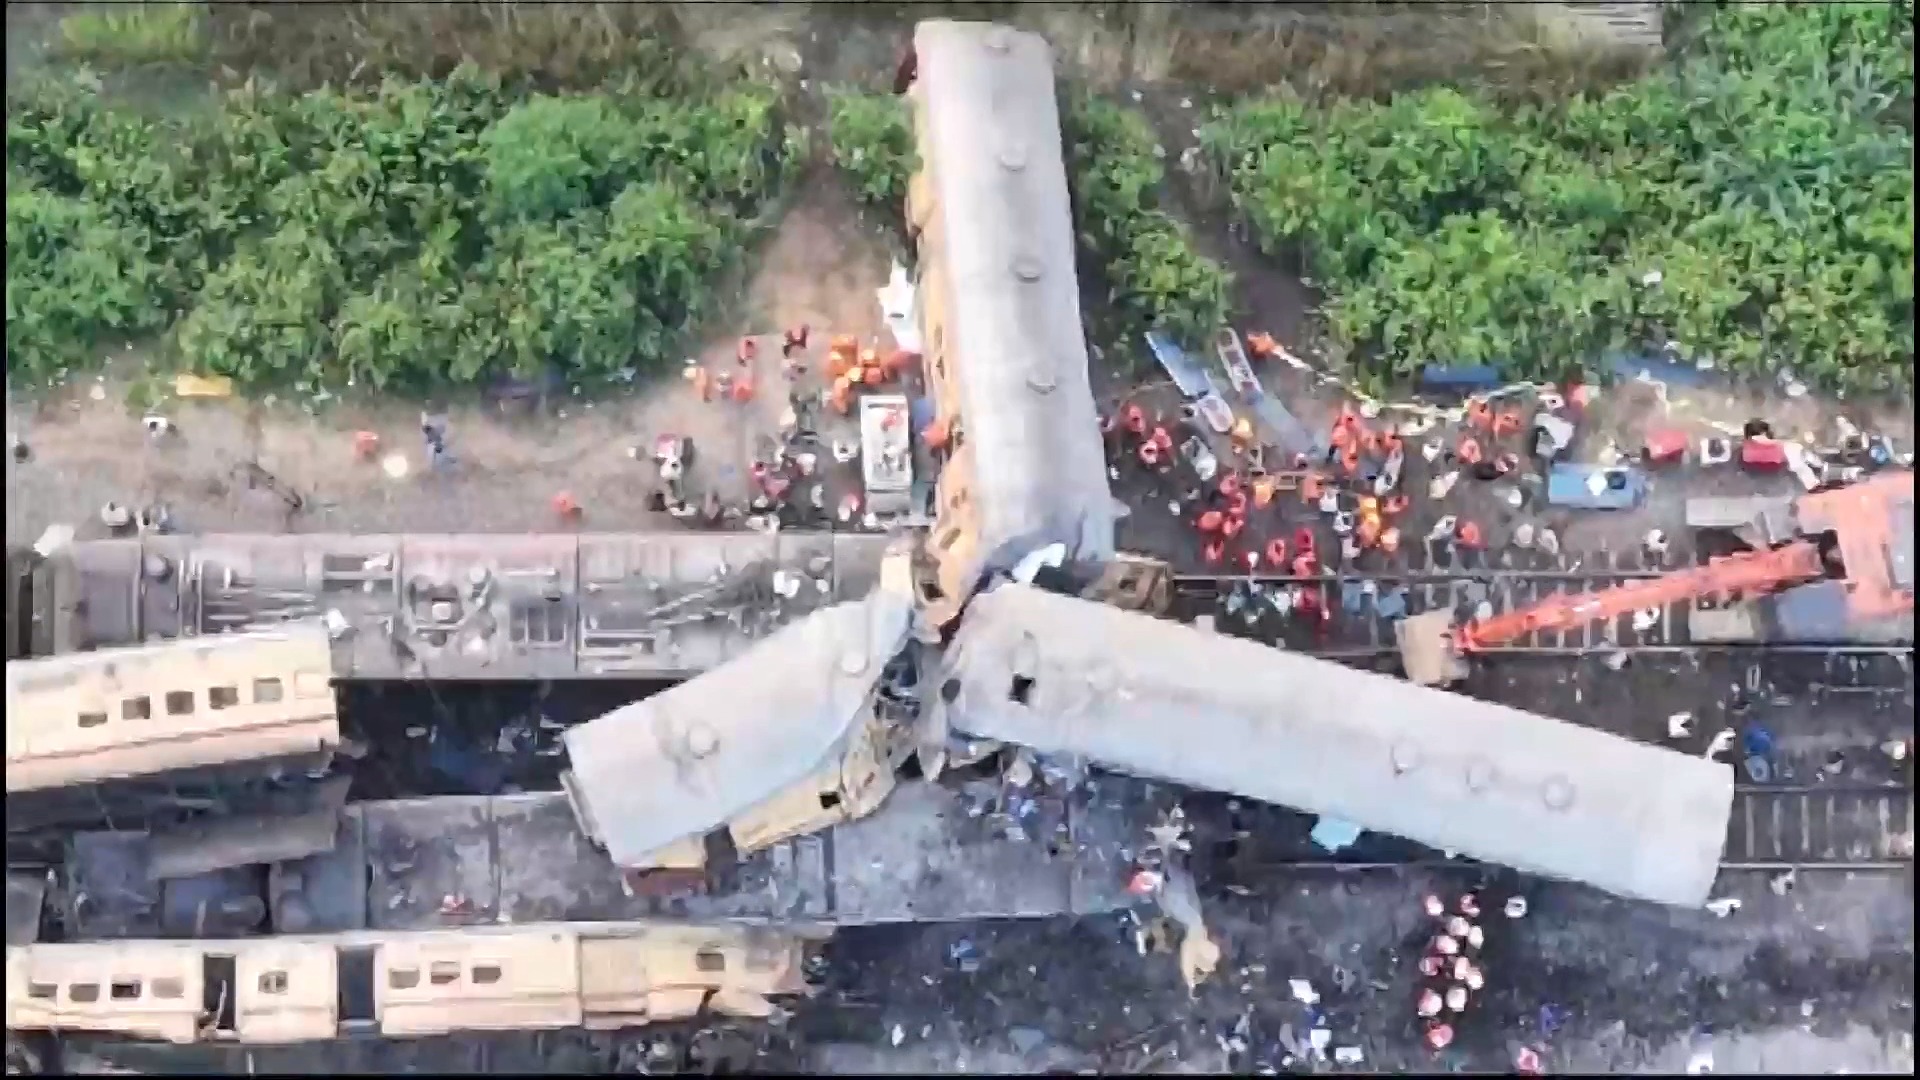 Nguyên nhân của vụ tai nạn hai tàu hỏa đâm nhau khiến 14 người thiệt mạng được xác định là do cả lái tàu và phụ lái mải xem điện thoại.